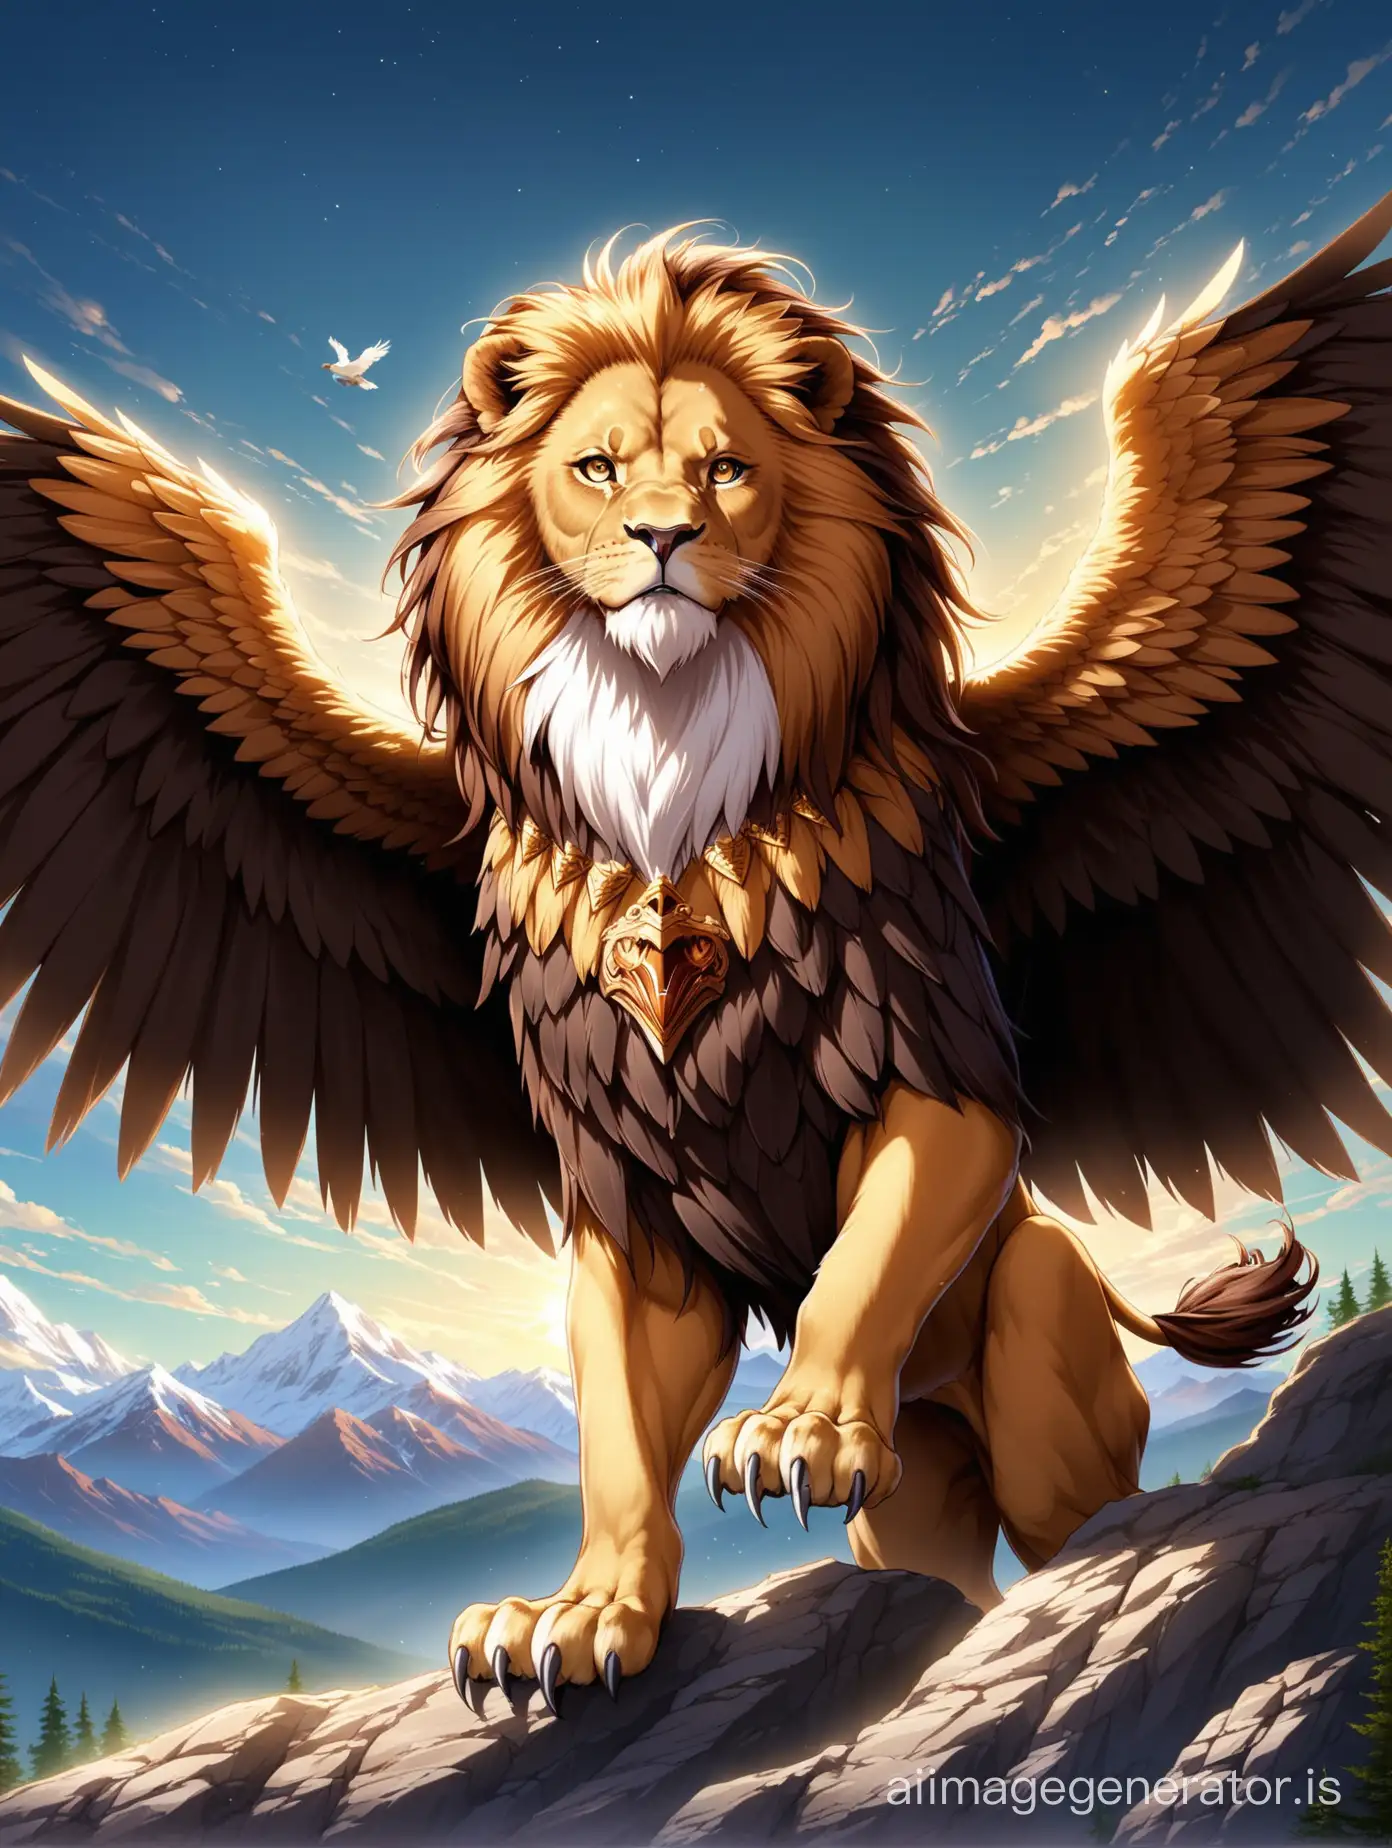 Lion and eagle fusion